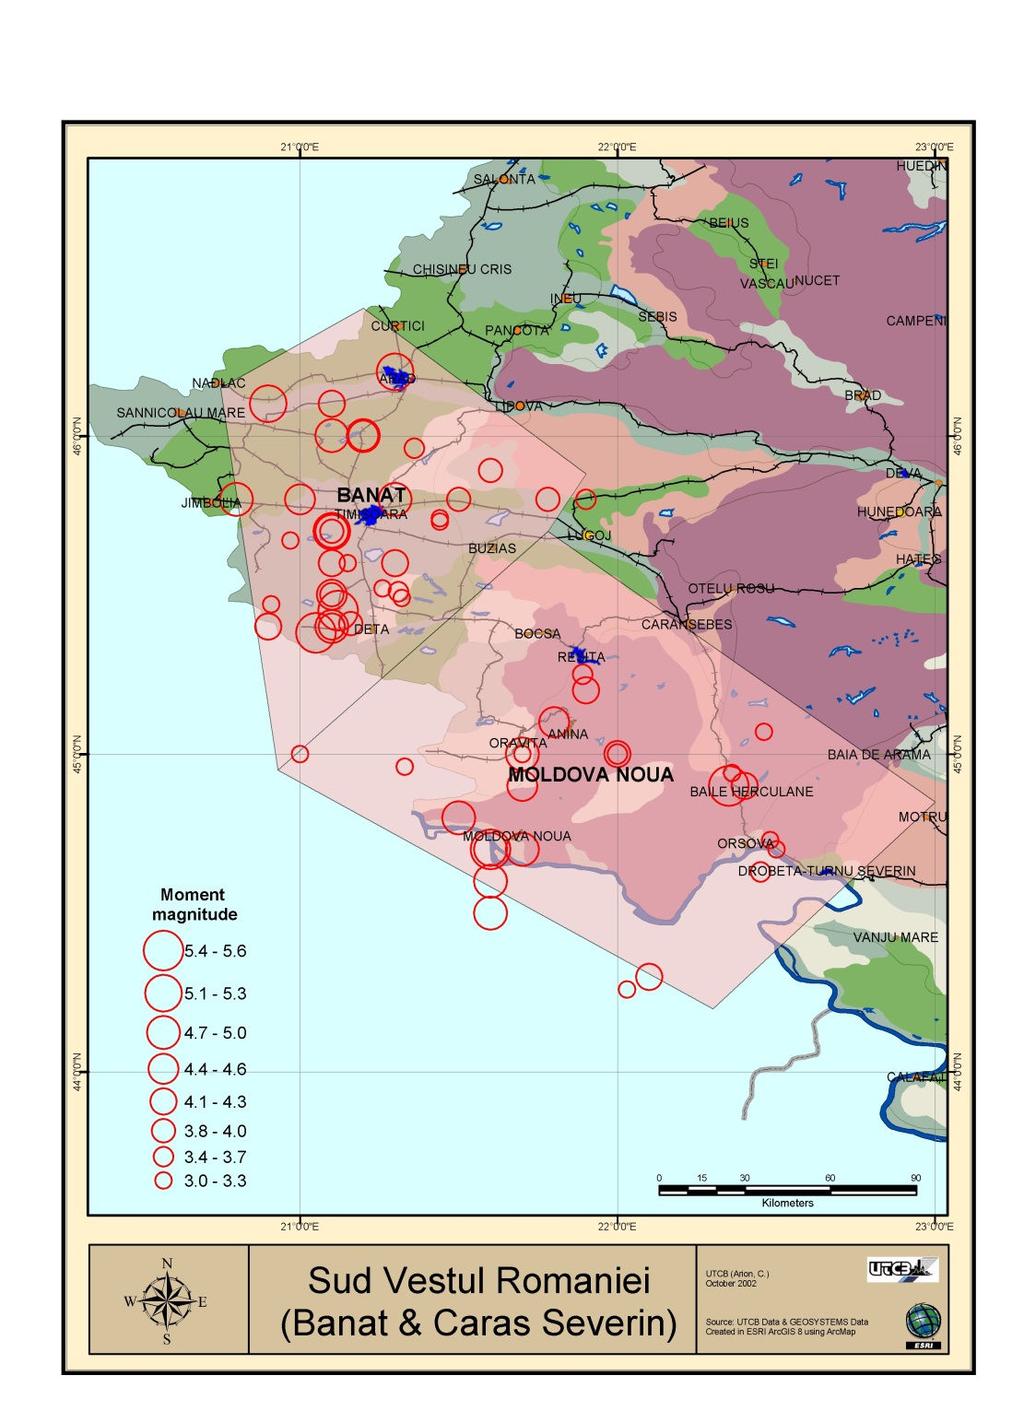 Diamica Structurilor şi Igierie Seismică. [v.204] http://www.ct.upt.ro/users/aurelstrata/ Figura 3.